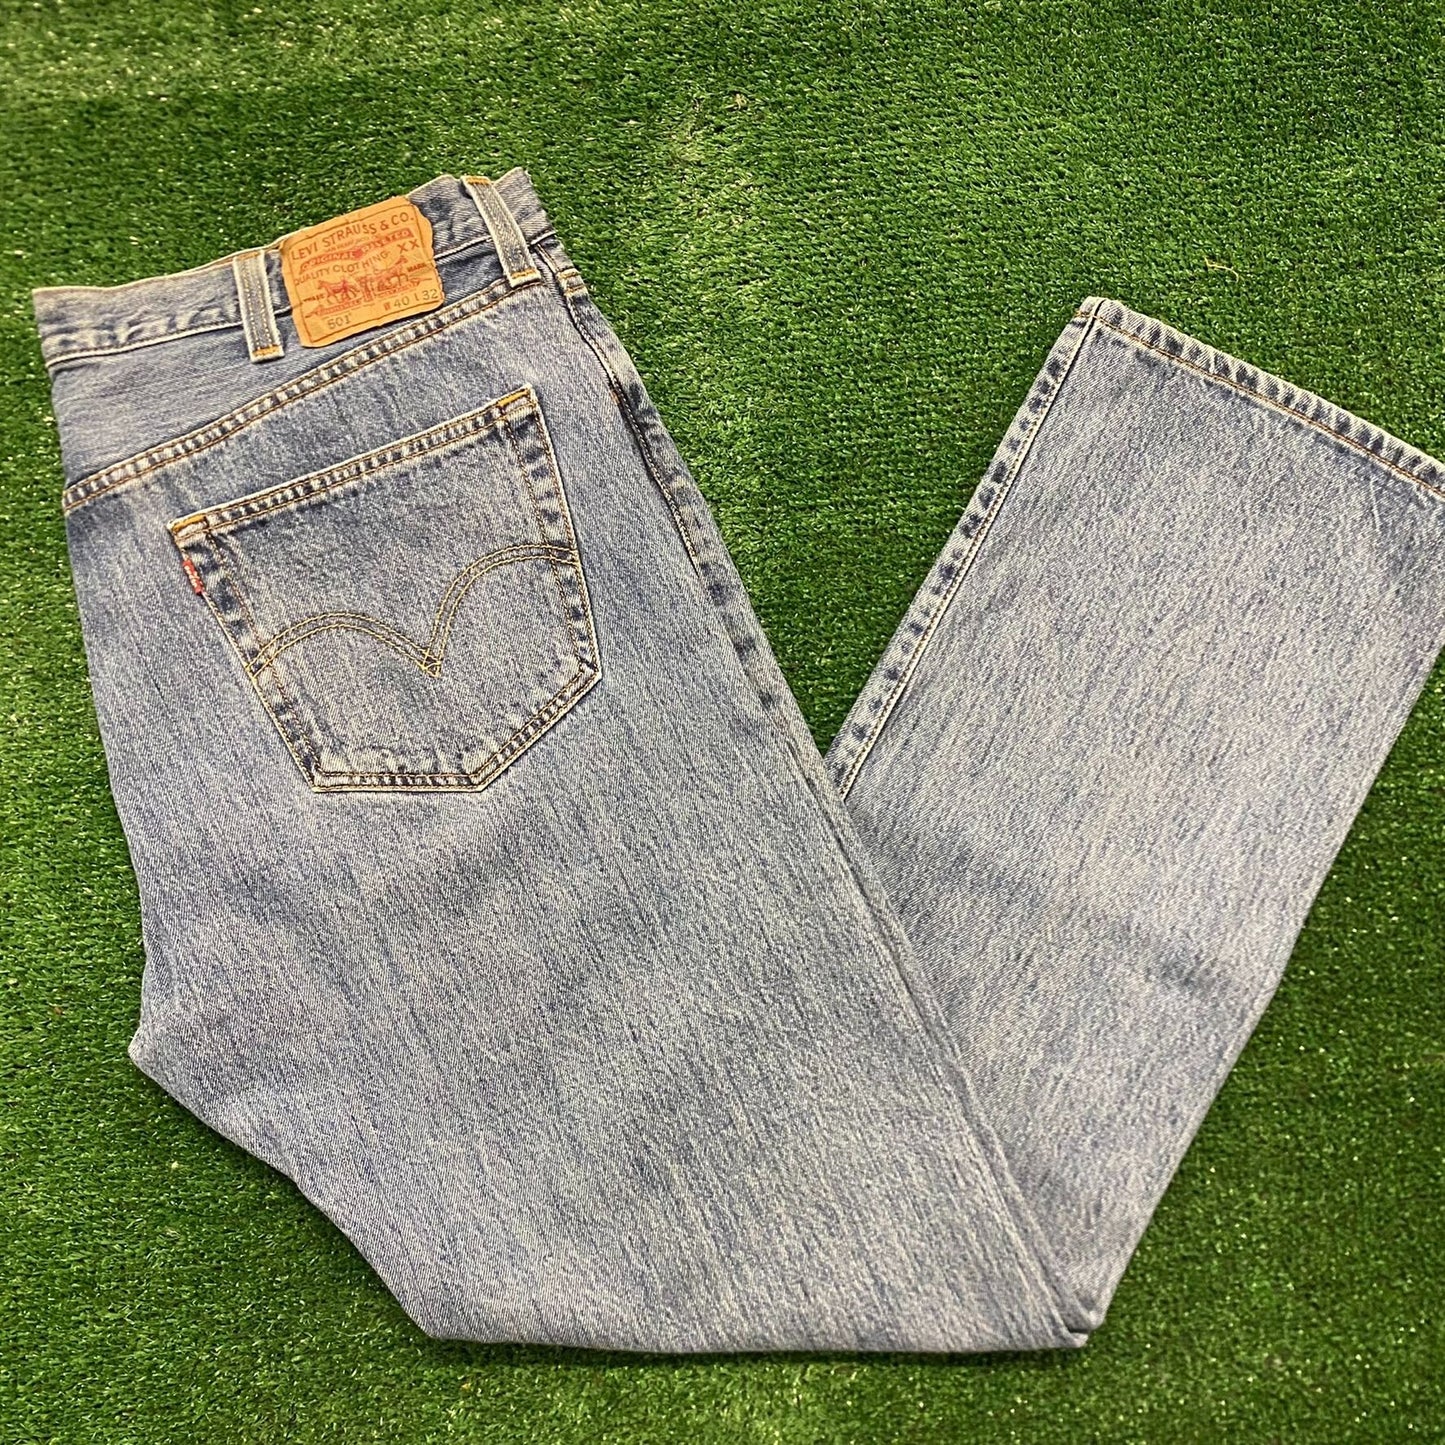 Levi's 501 Straight Fit Vintage Denim Jeans Pants